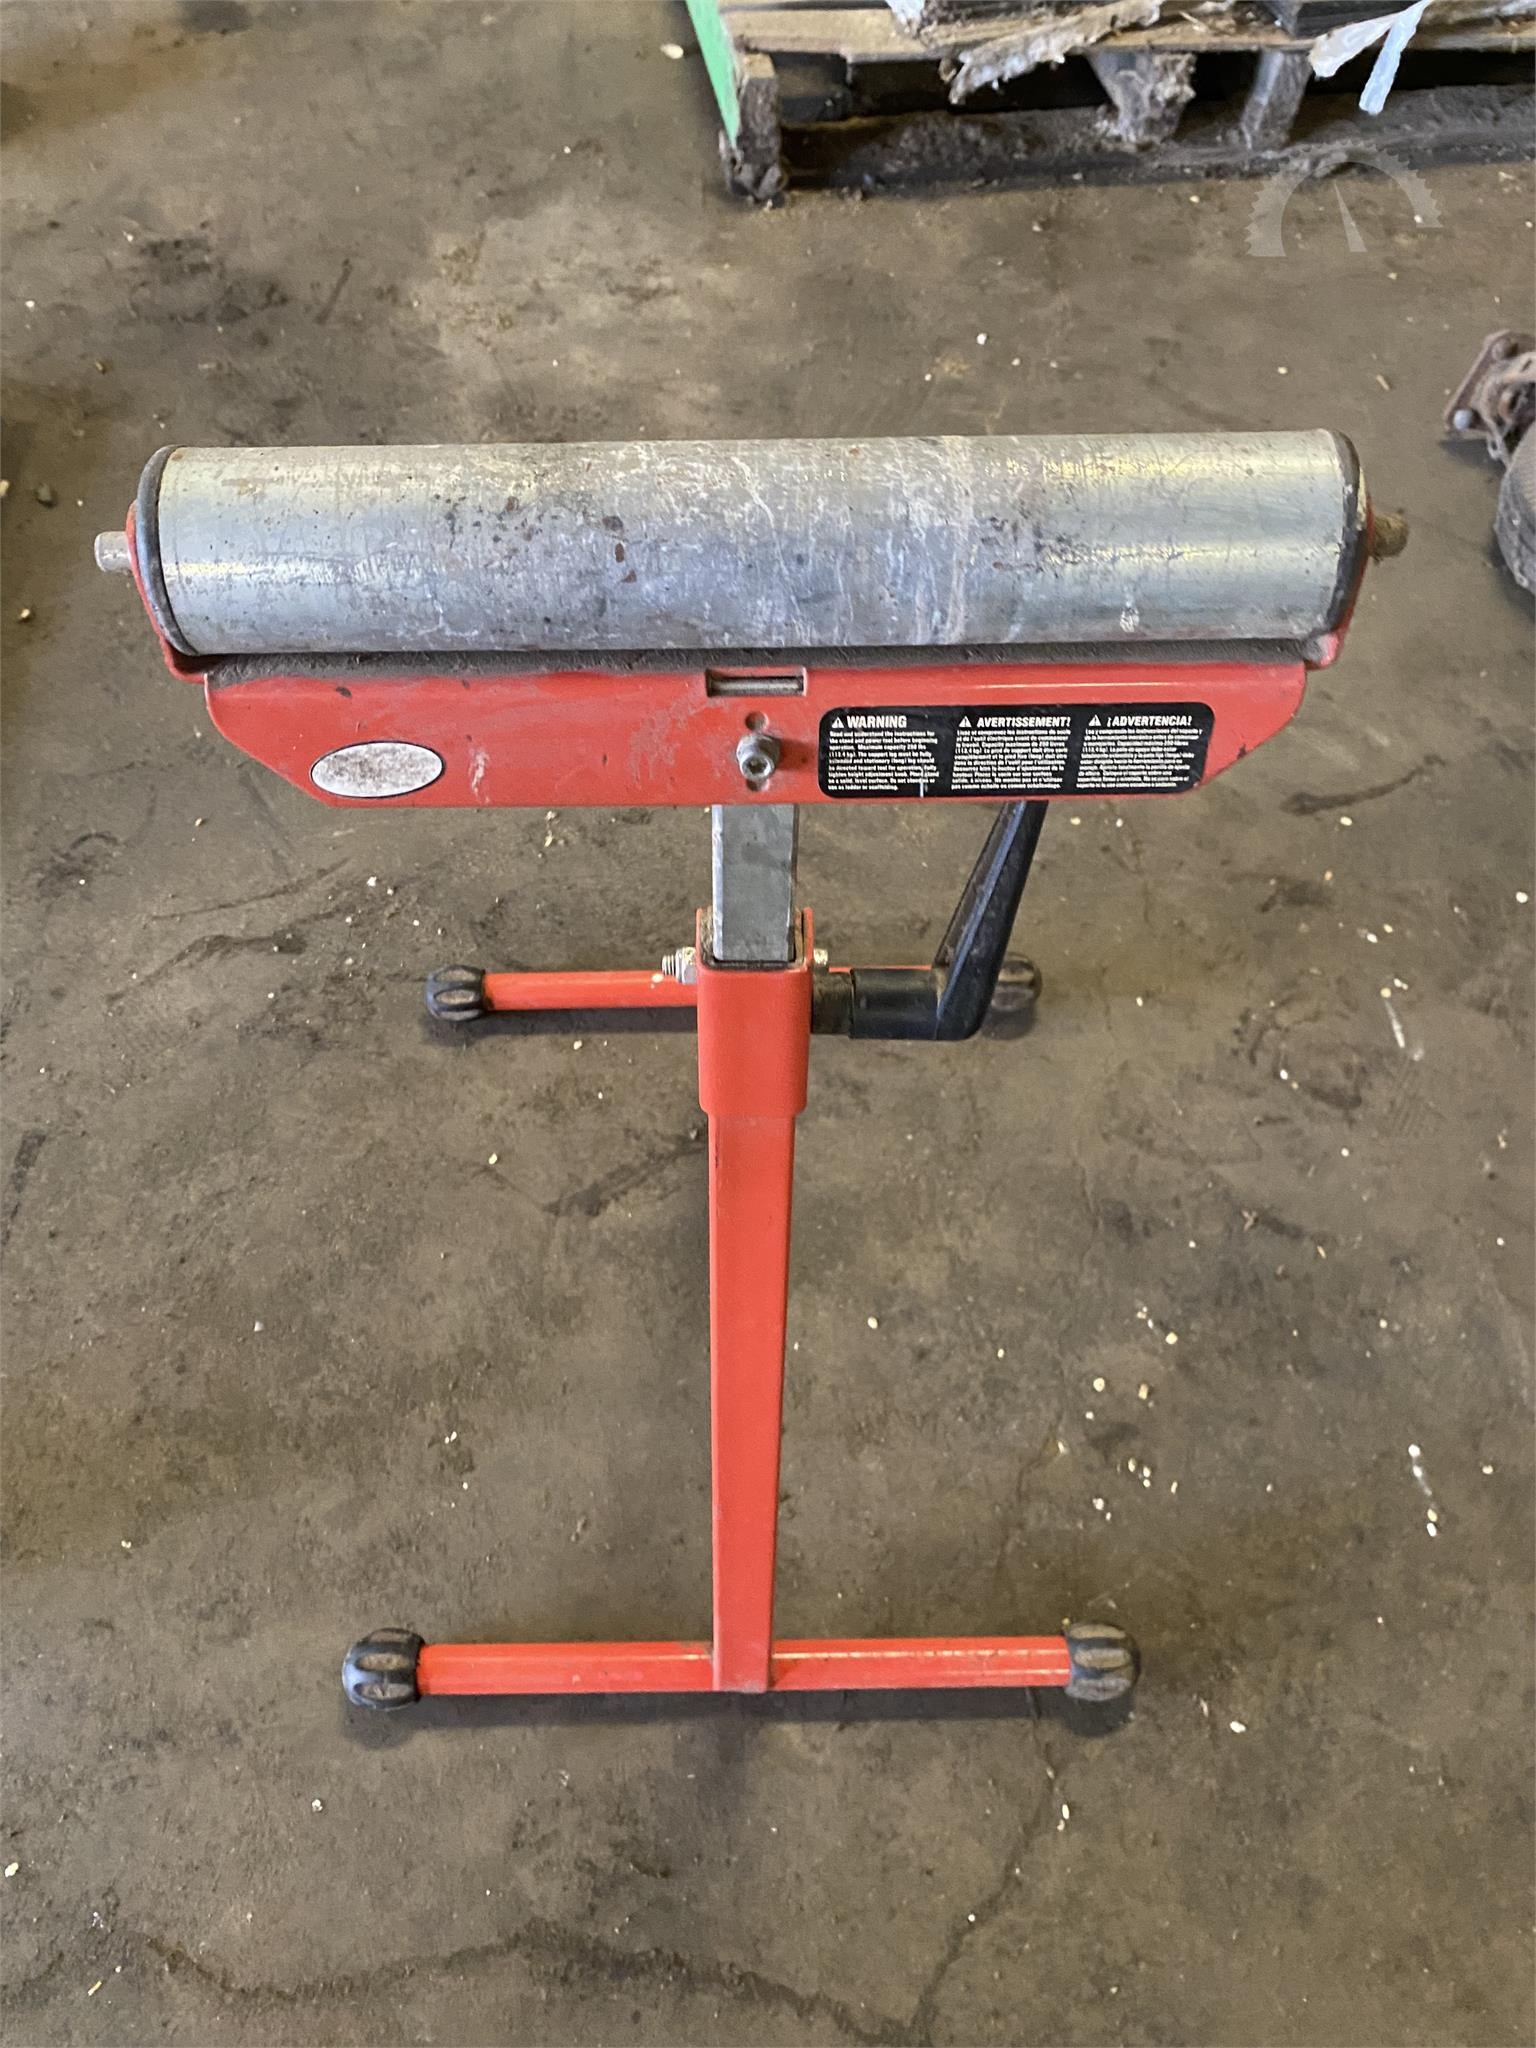 Fiberglass Roller Tools Housework Screed Roller for Building Tub Repair Tool